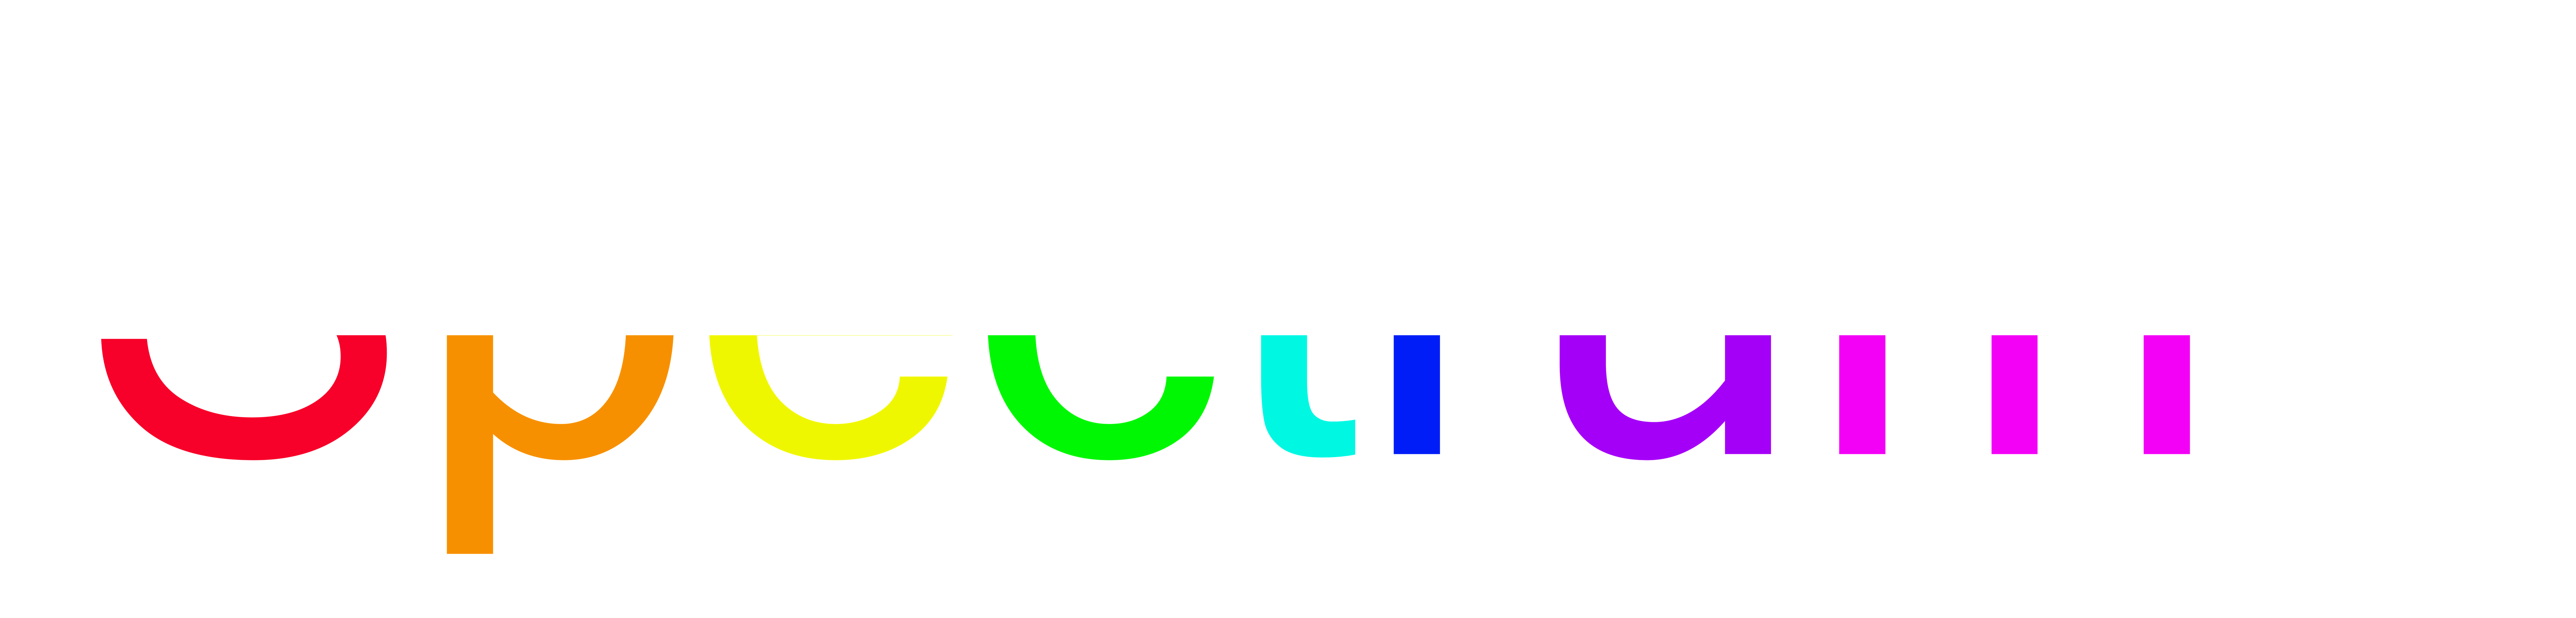 Spectrum's logo